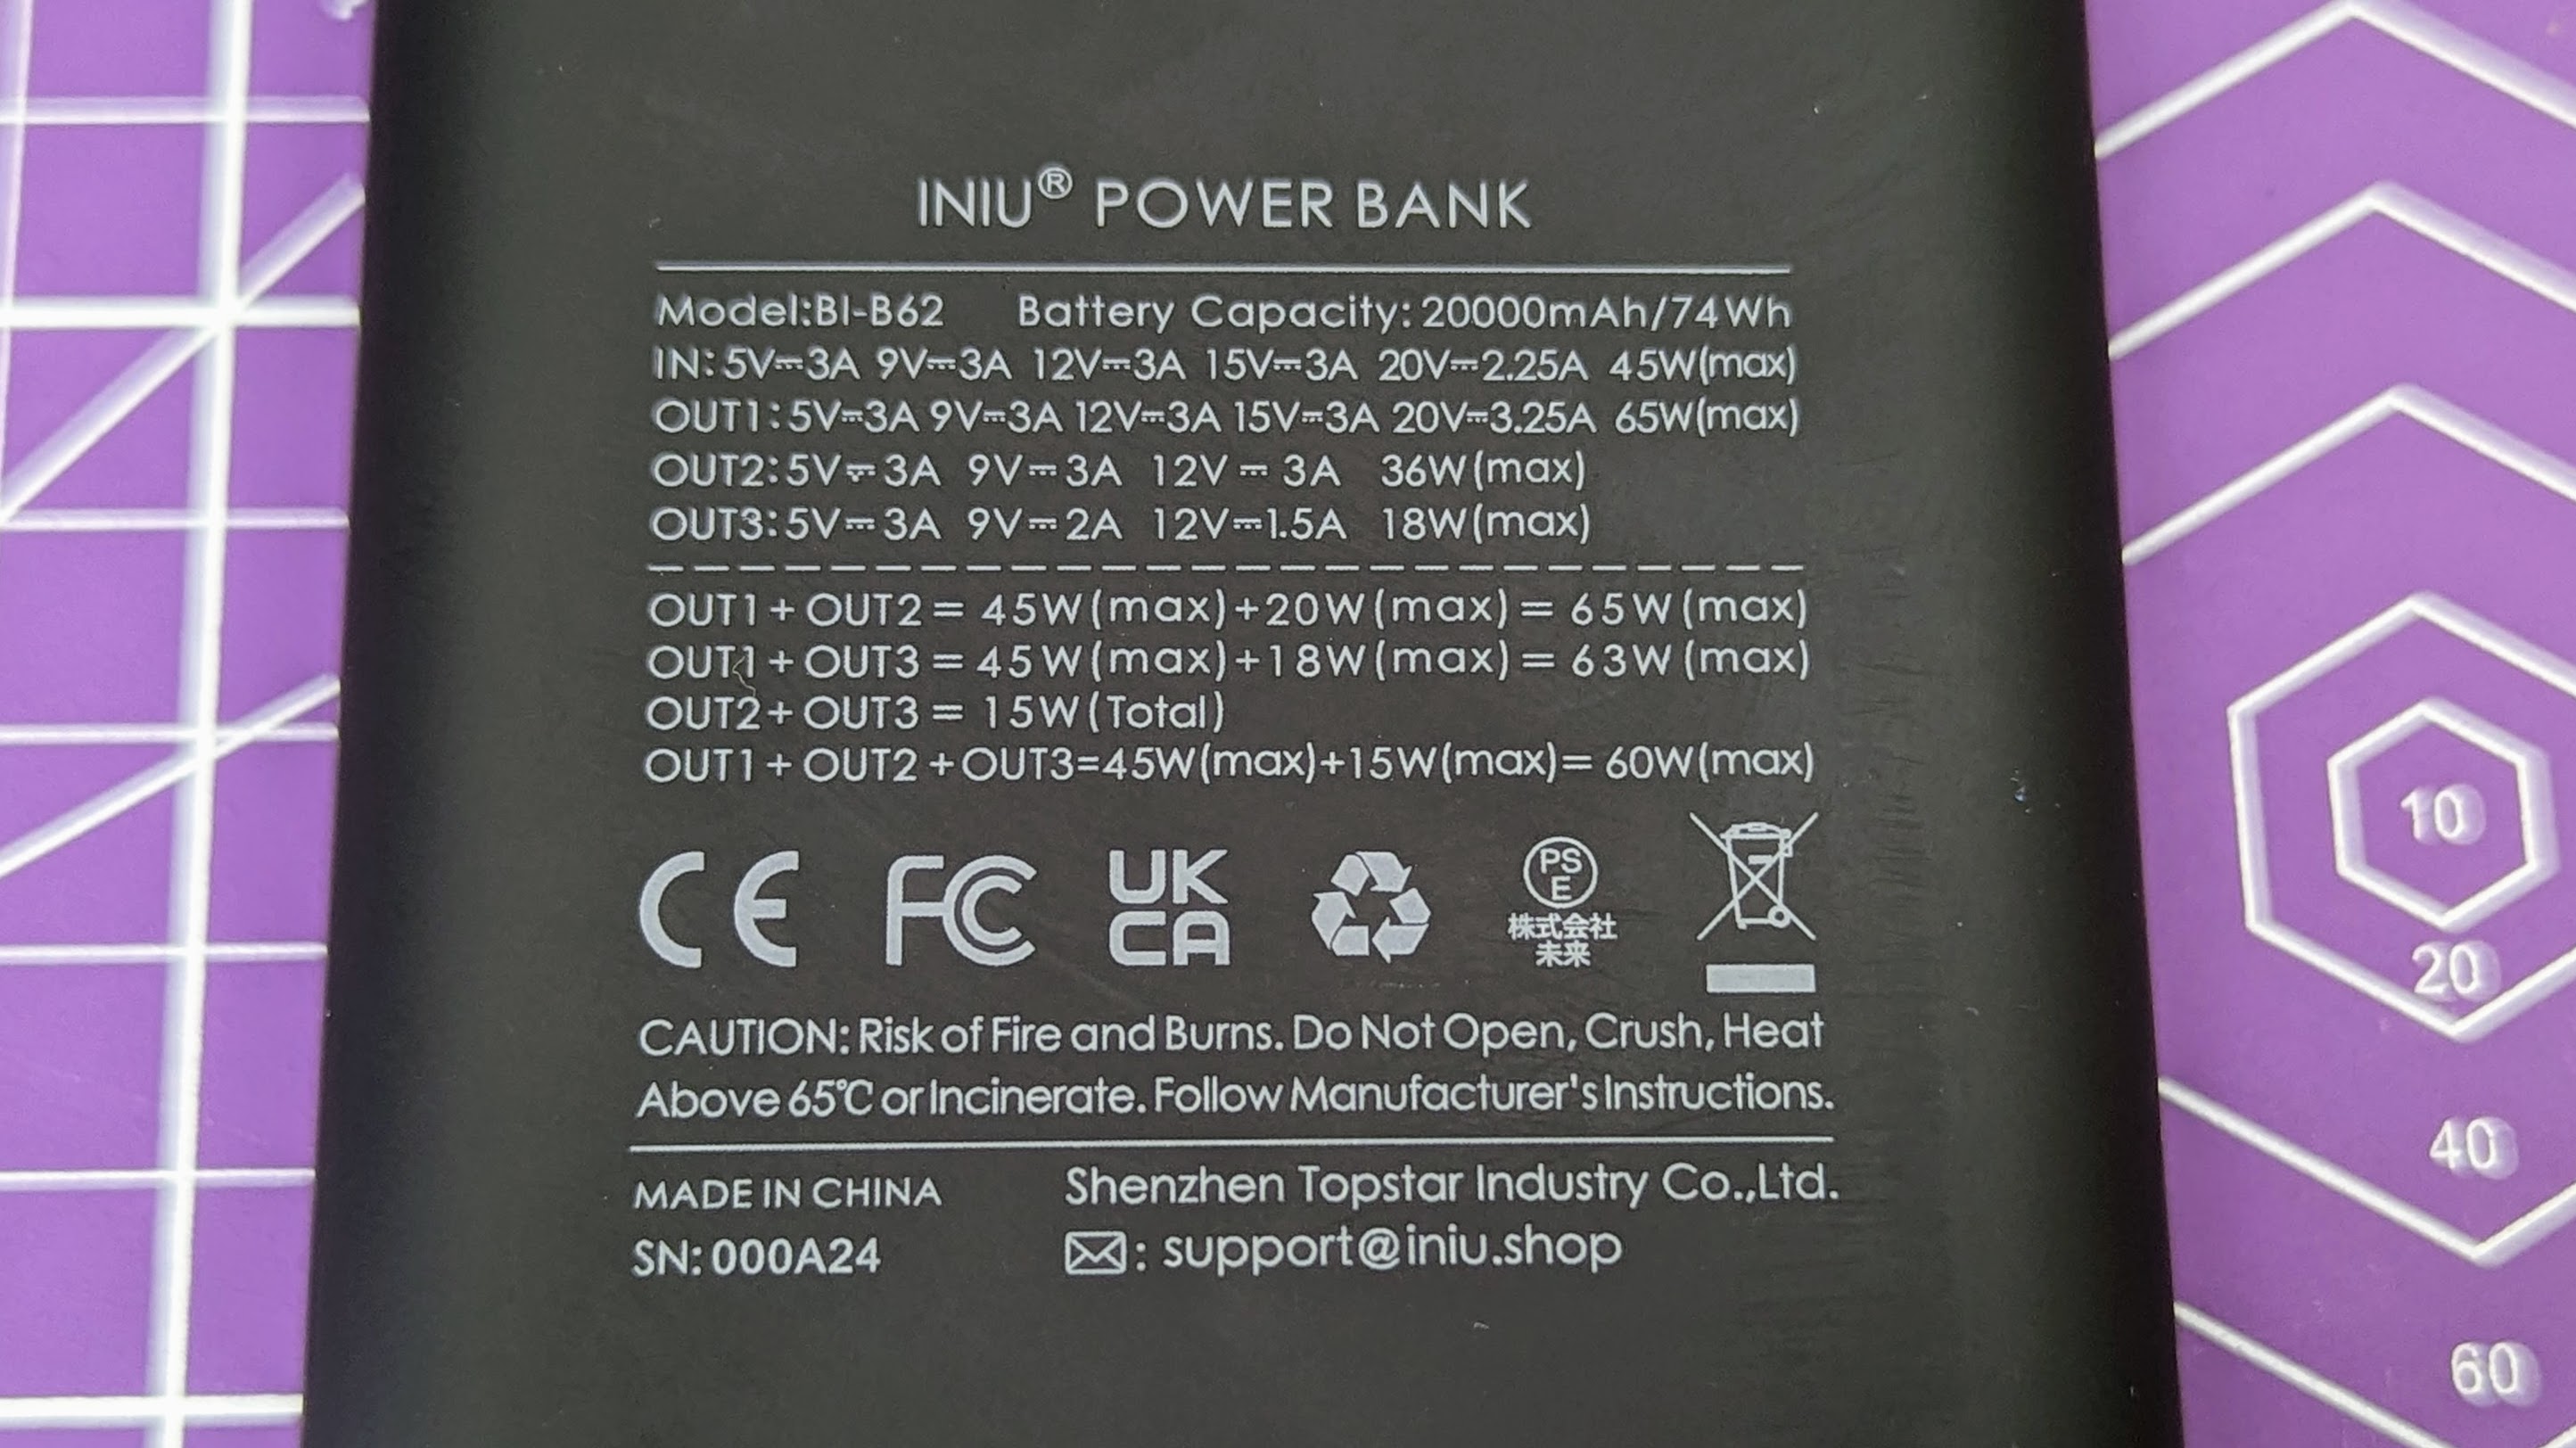 INIU B62 20,000mAh power bank